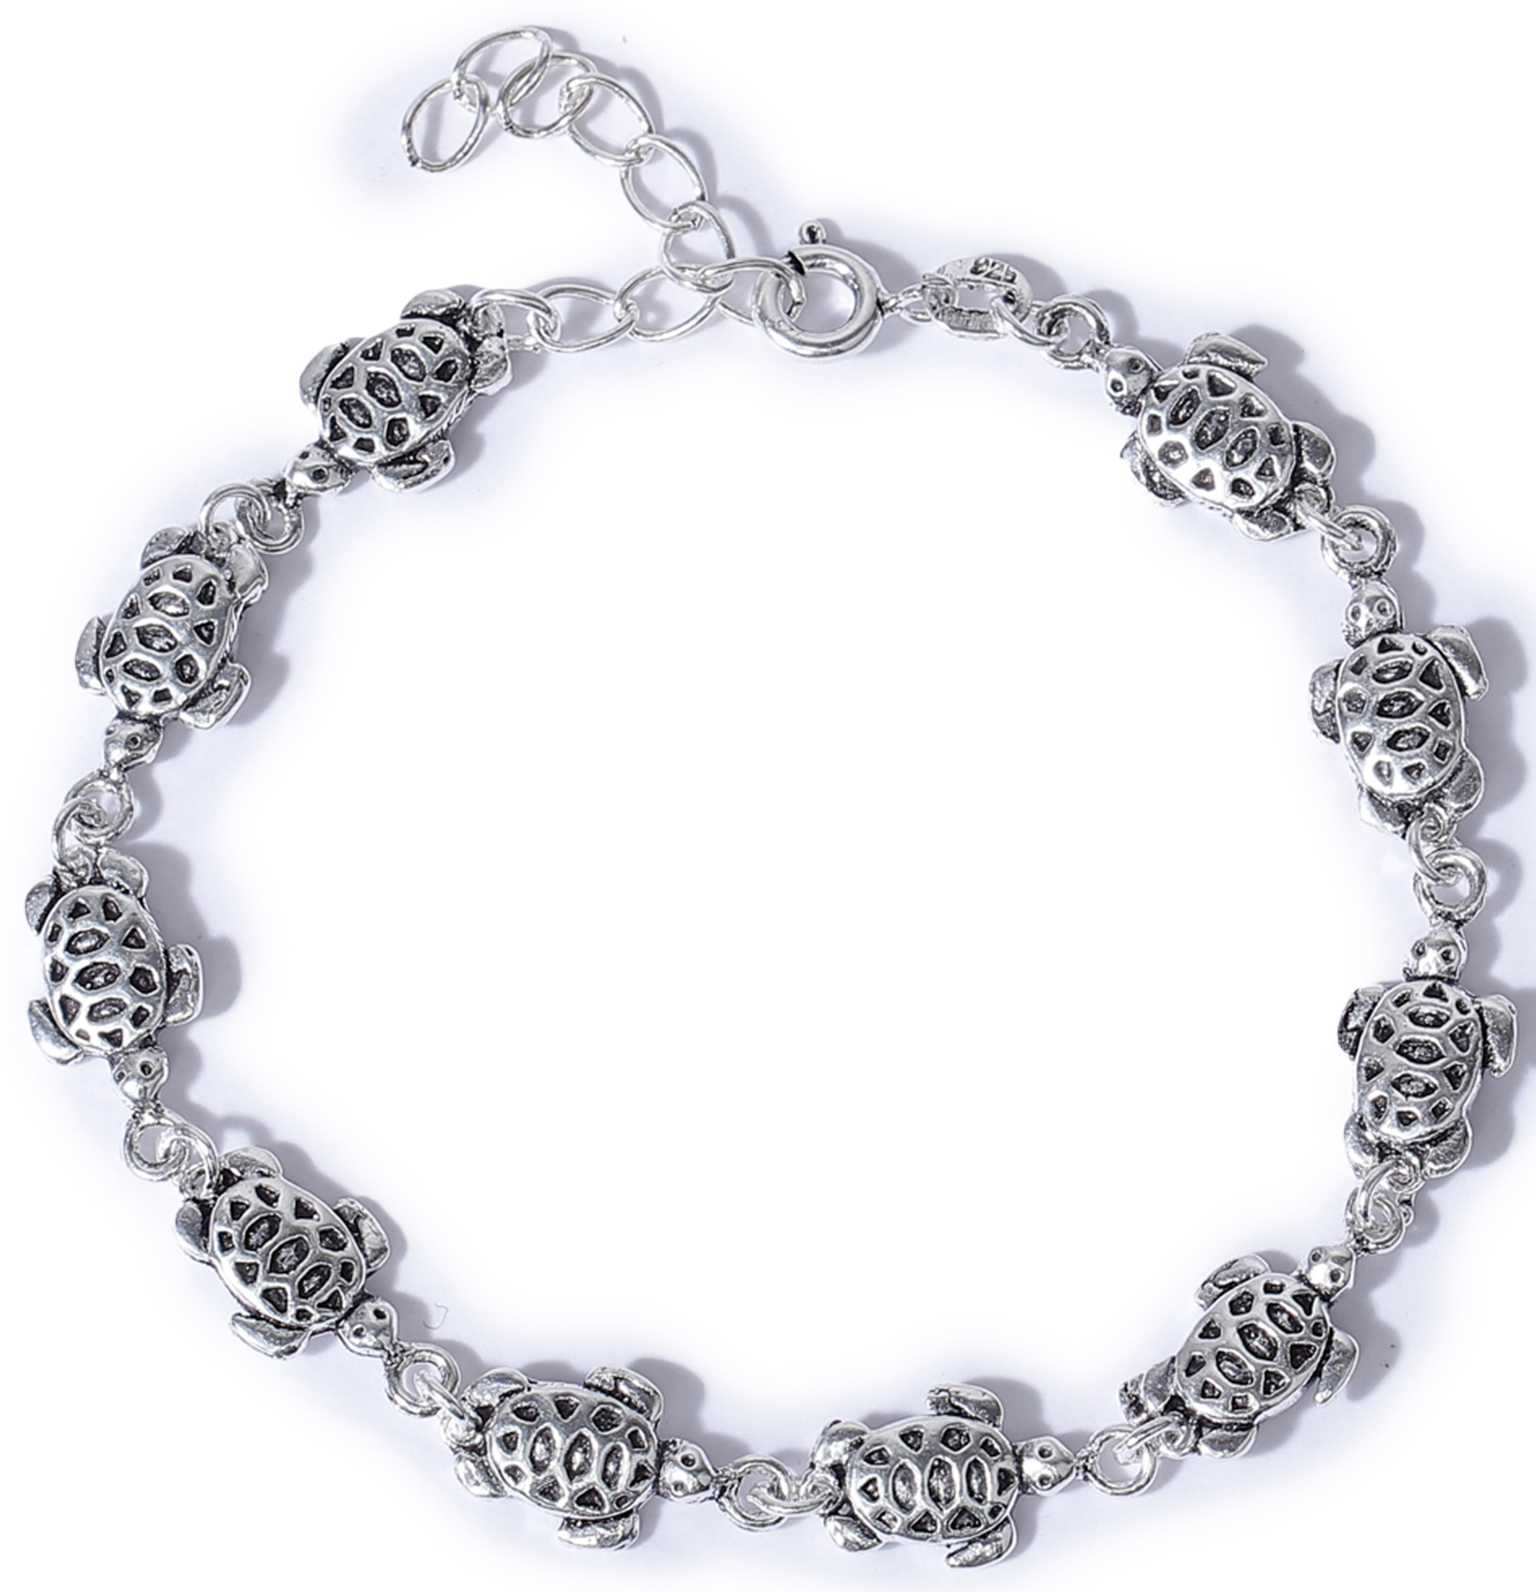 Turtle Silver Bracelet Bracelet – Low Tide Island Design